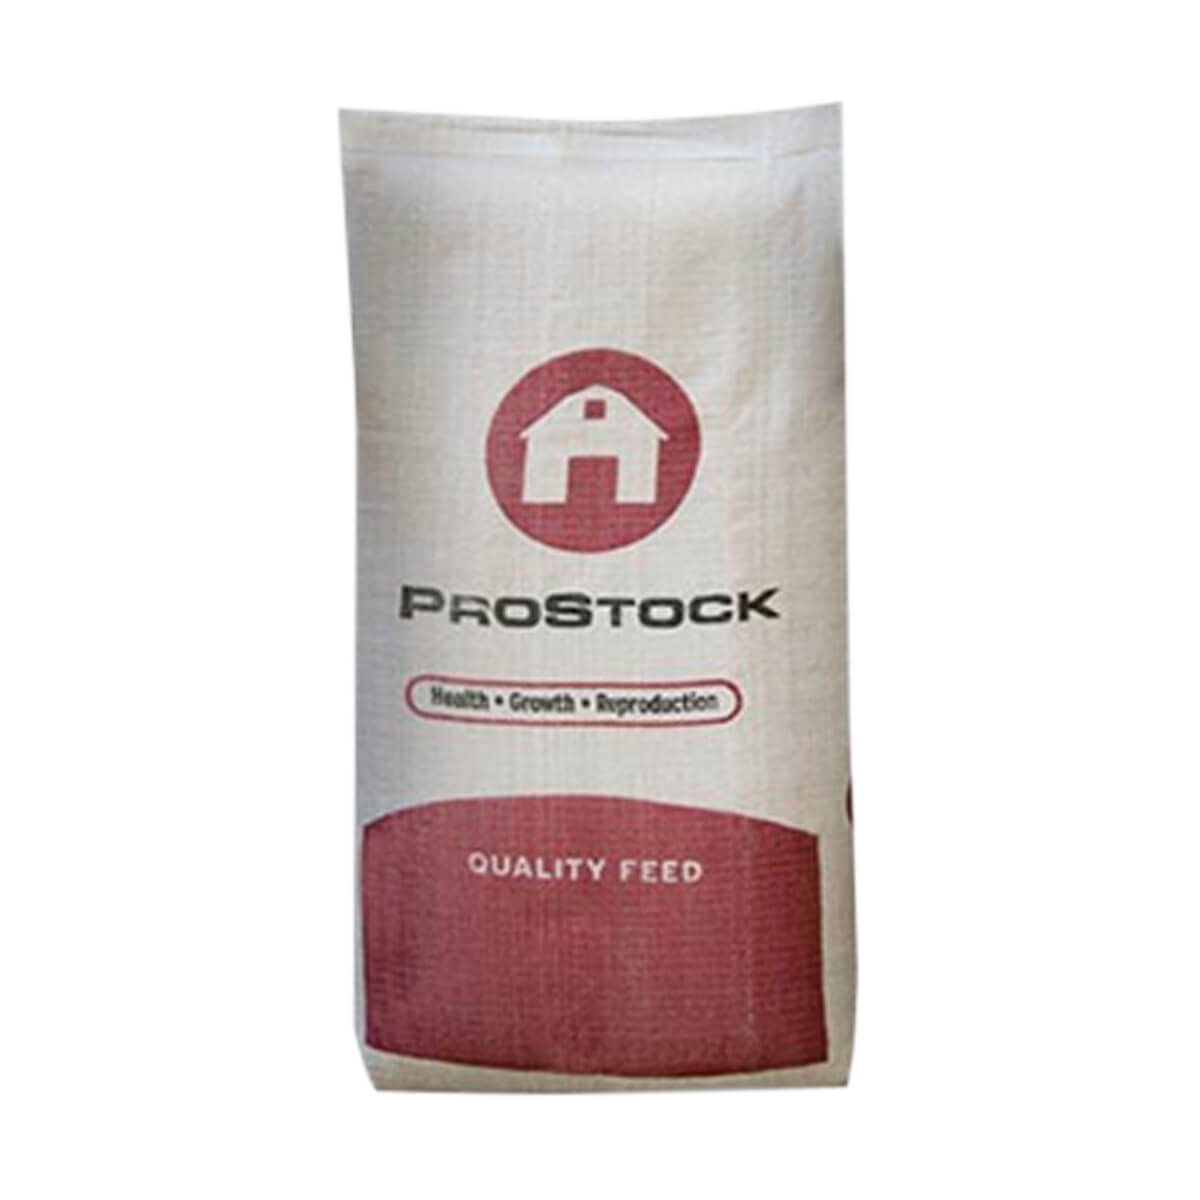 PROSTOCK™ Hog Grower - 16% - 25 kg